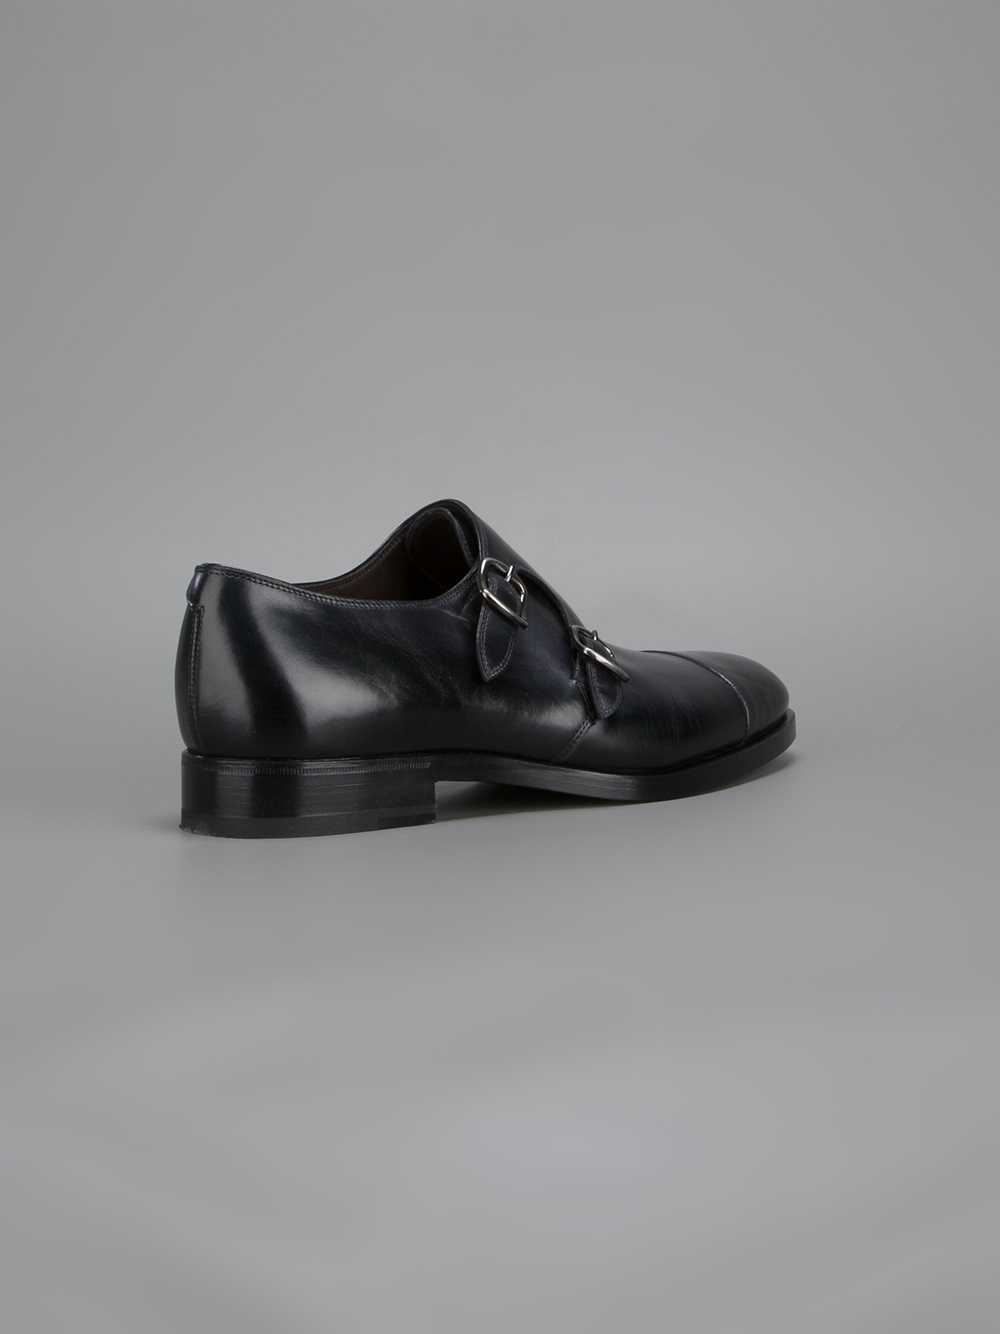 Fratelli Rossetti Double Monk Strap Shoe in Black for Men - Lyst